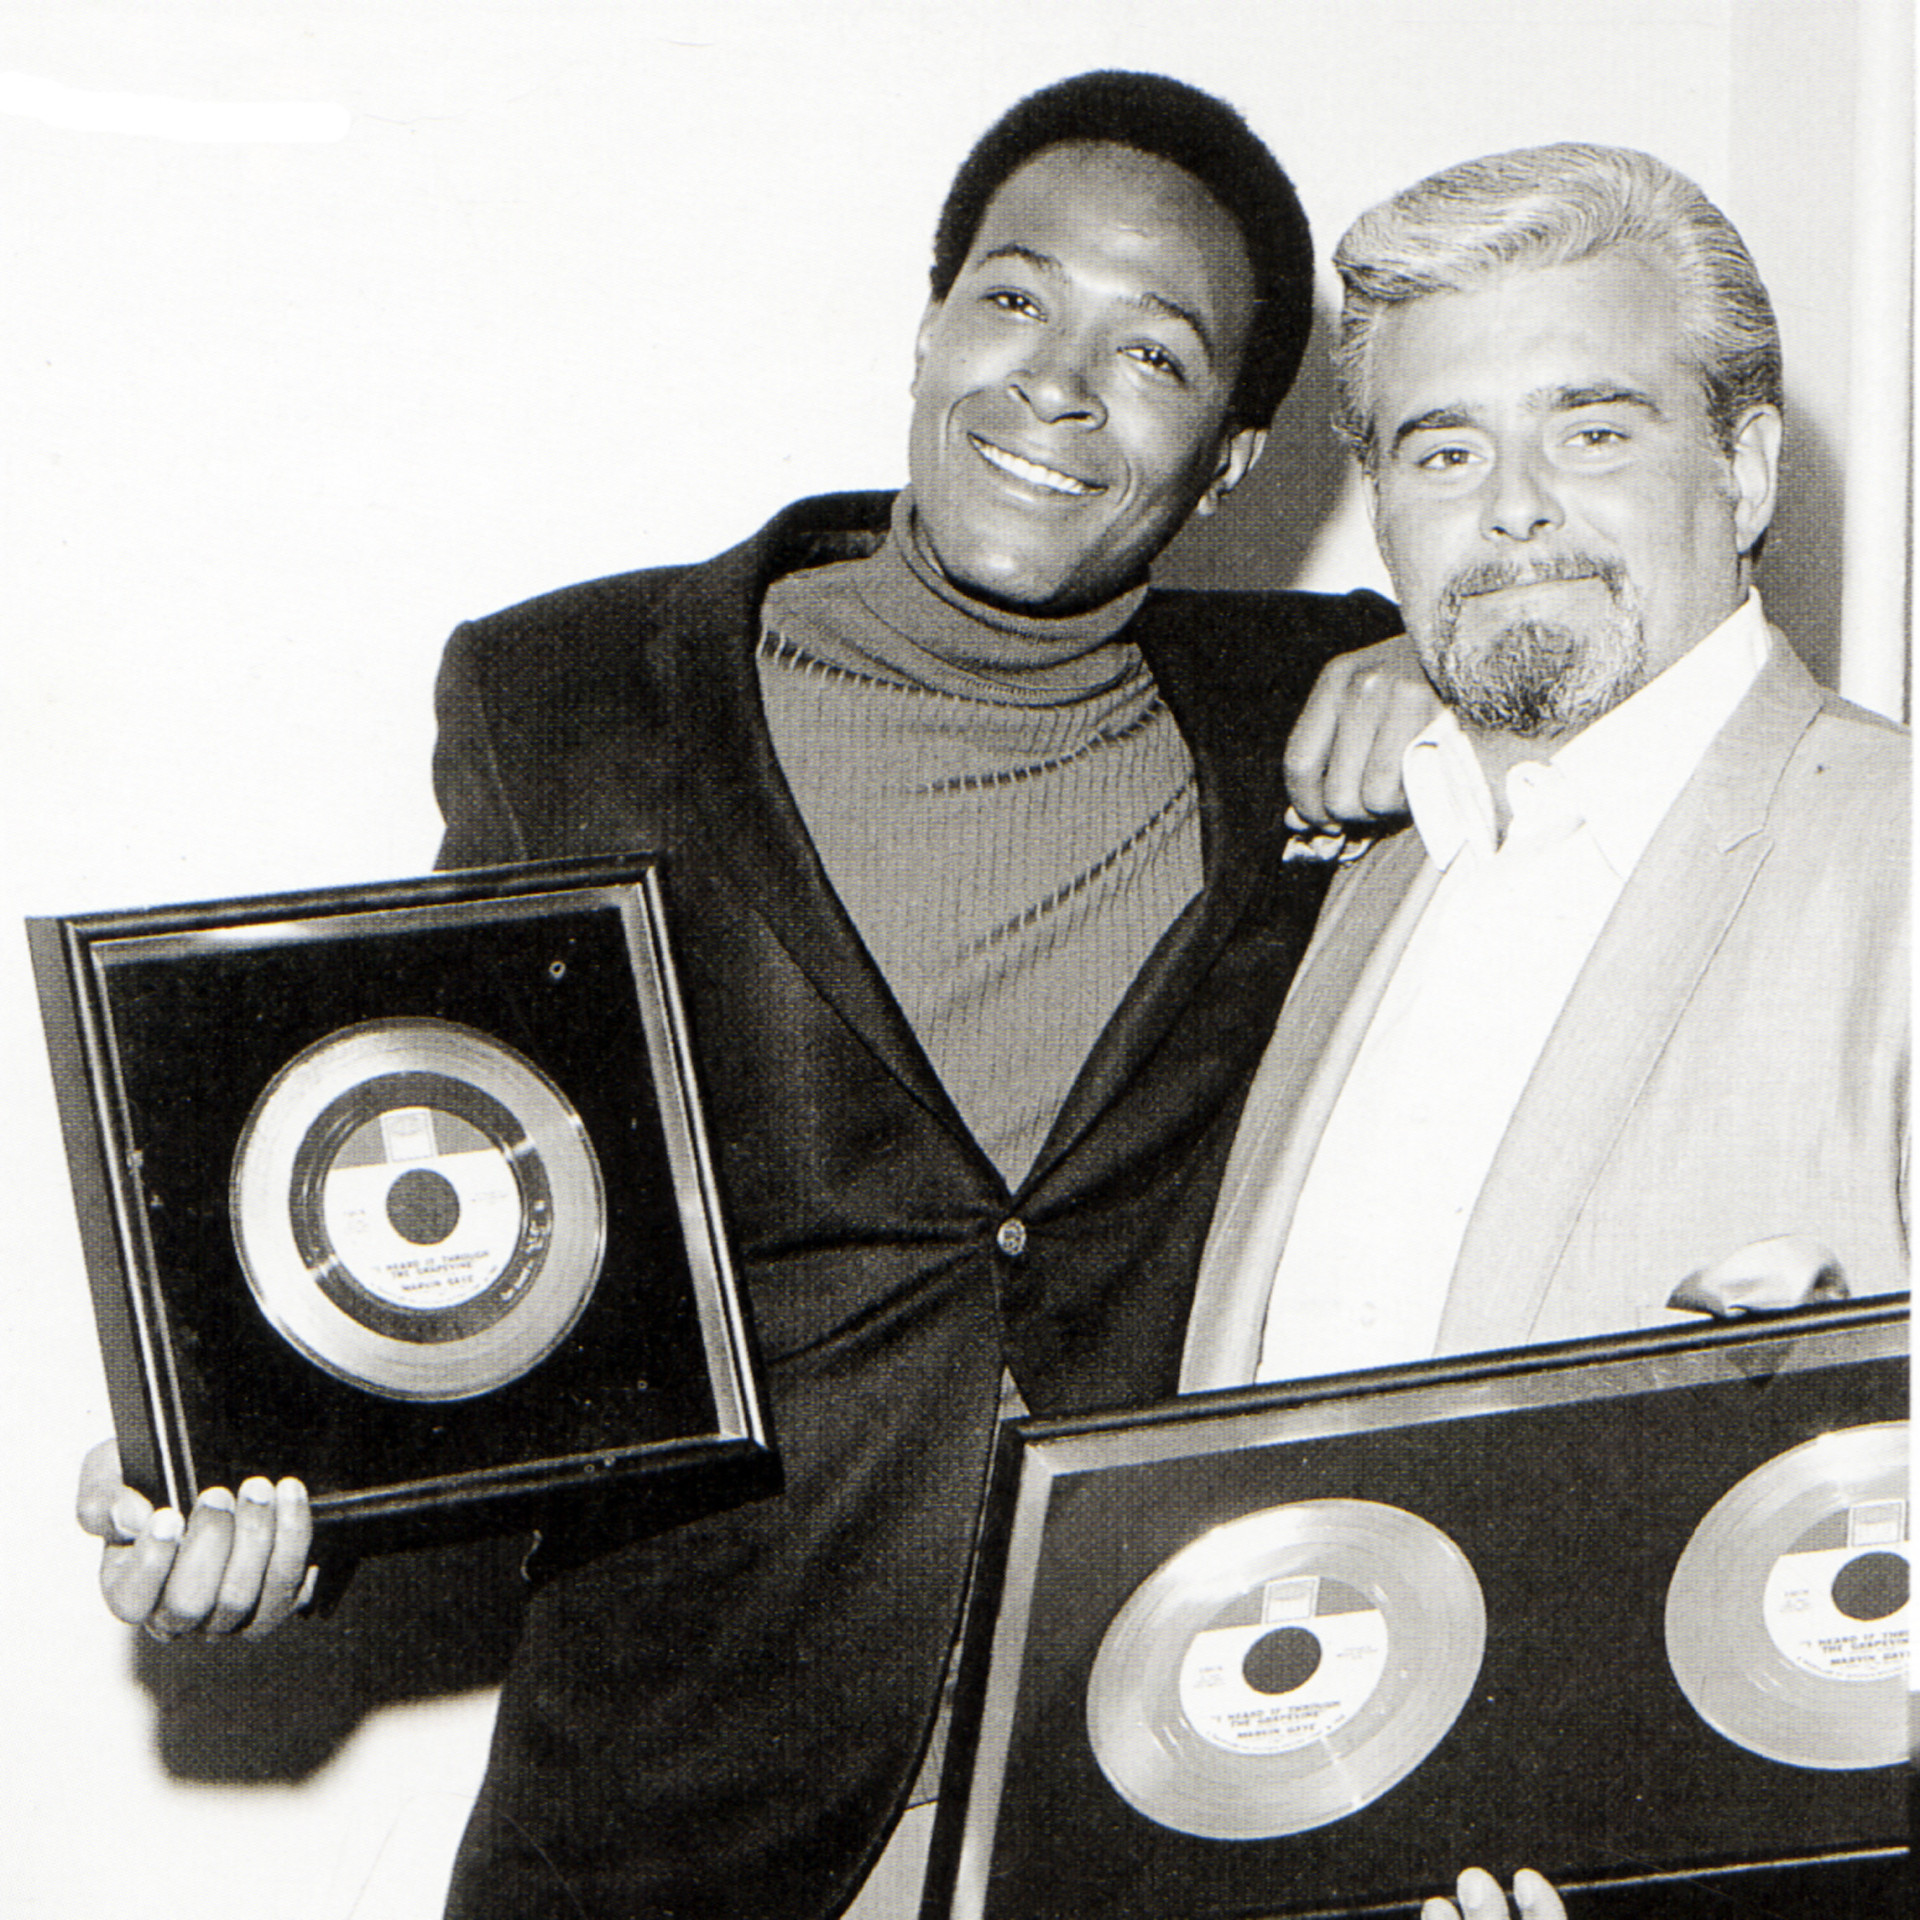 <p>Marvin Gaye erreichte 1968 zum ersten Mal die Spitze der <em>Billboard Hot 100 Chart</em>s, und zwar mit seinem wohl bis heute populärsten Song "I Heard It Through the Grapevine". Von der Single wurden über vier Millionen Exemplare verkauft, was sie schnell zur erfolgreichsten Motown-Veröffentlichung der damaligen Zeit machte.</p><p>Sie können auch mögen:<a href="https://de.starsinsider.com/n/438879?utm_source=msn.com&utm_medium=display&utm_campaign=referral_description&utm_content=543706"> Heftig! Die strikten Hochzeitsregeln der britischen Königsfamilie</a></p>